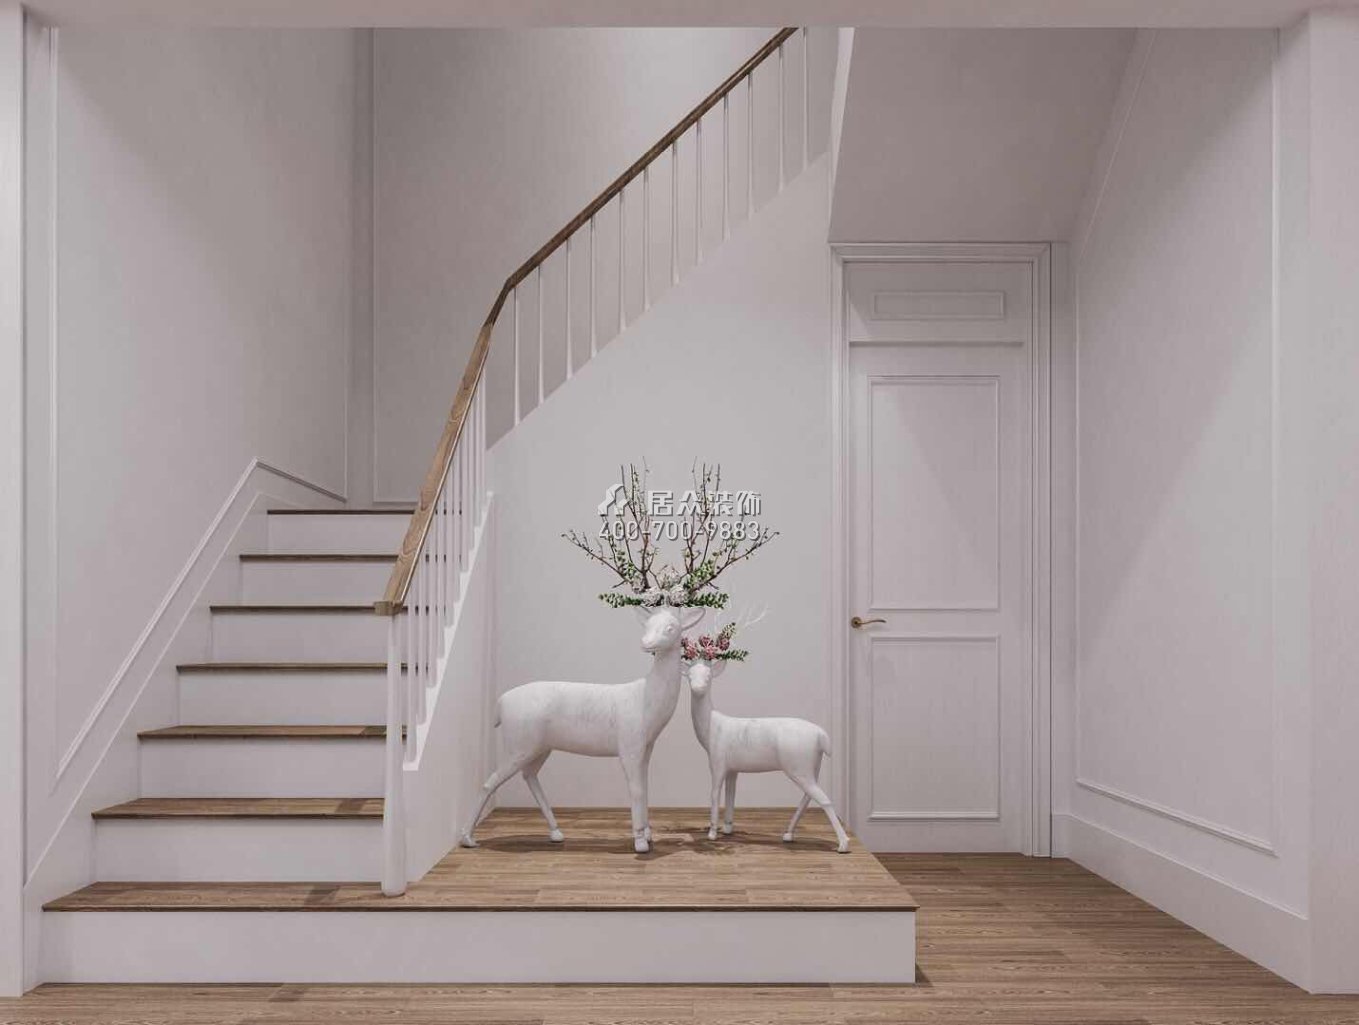 九洲保利天河320平方米現代簡約風格別墅戶型樓梯裝修效果圖